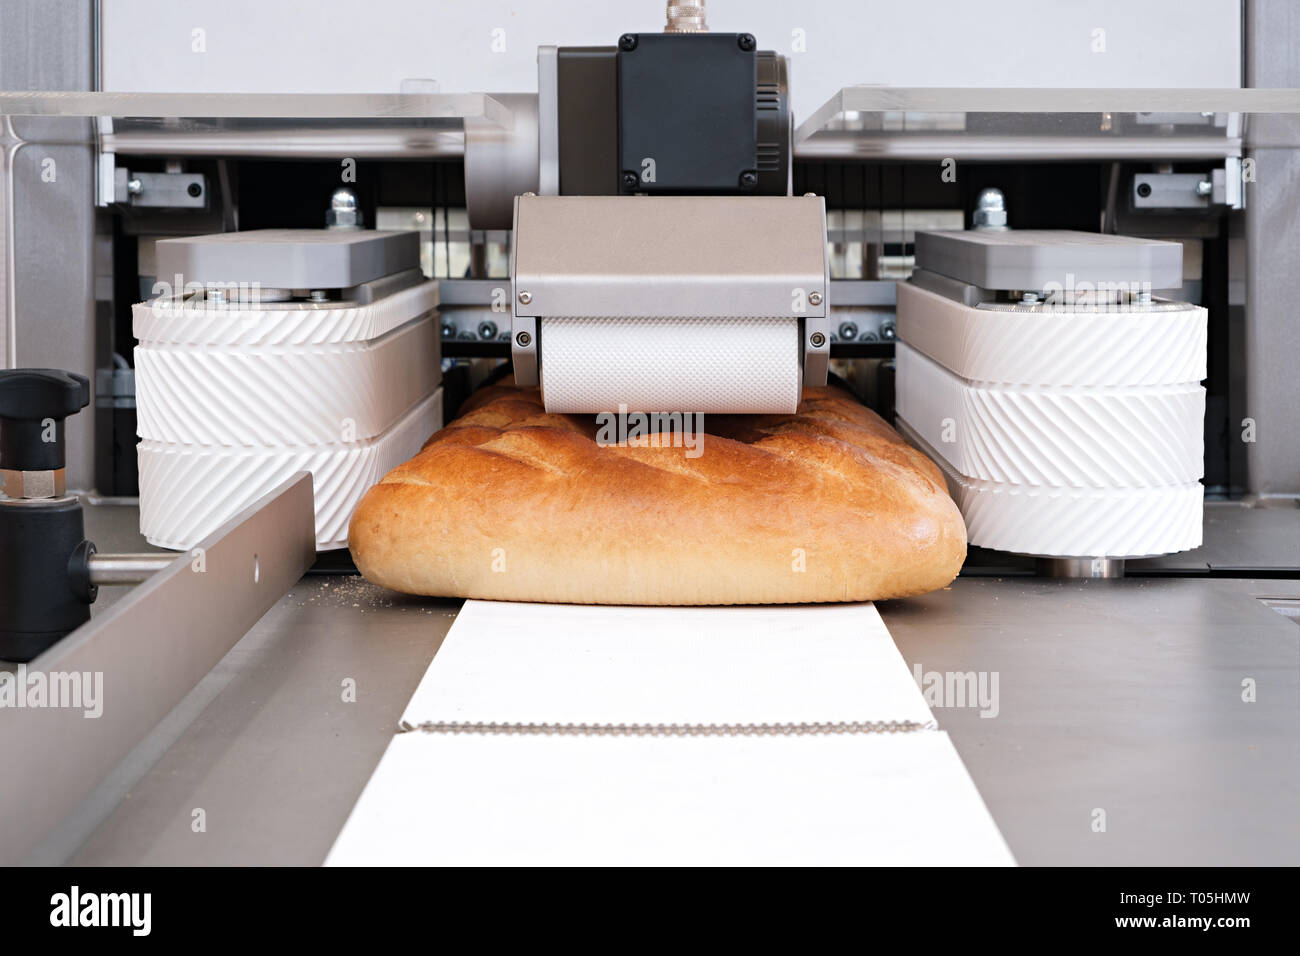 https://c8.alamy.com/comp/T05HMW/sliced-white-bread-in-a-cutting-machine-T05HMW.jpg